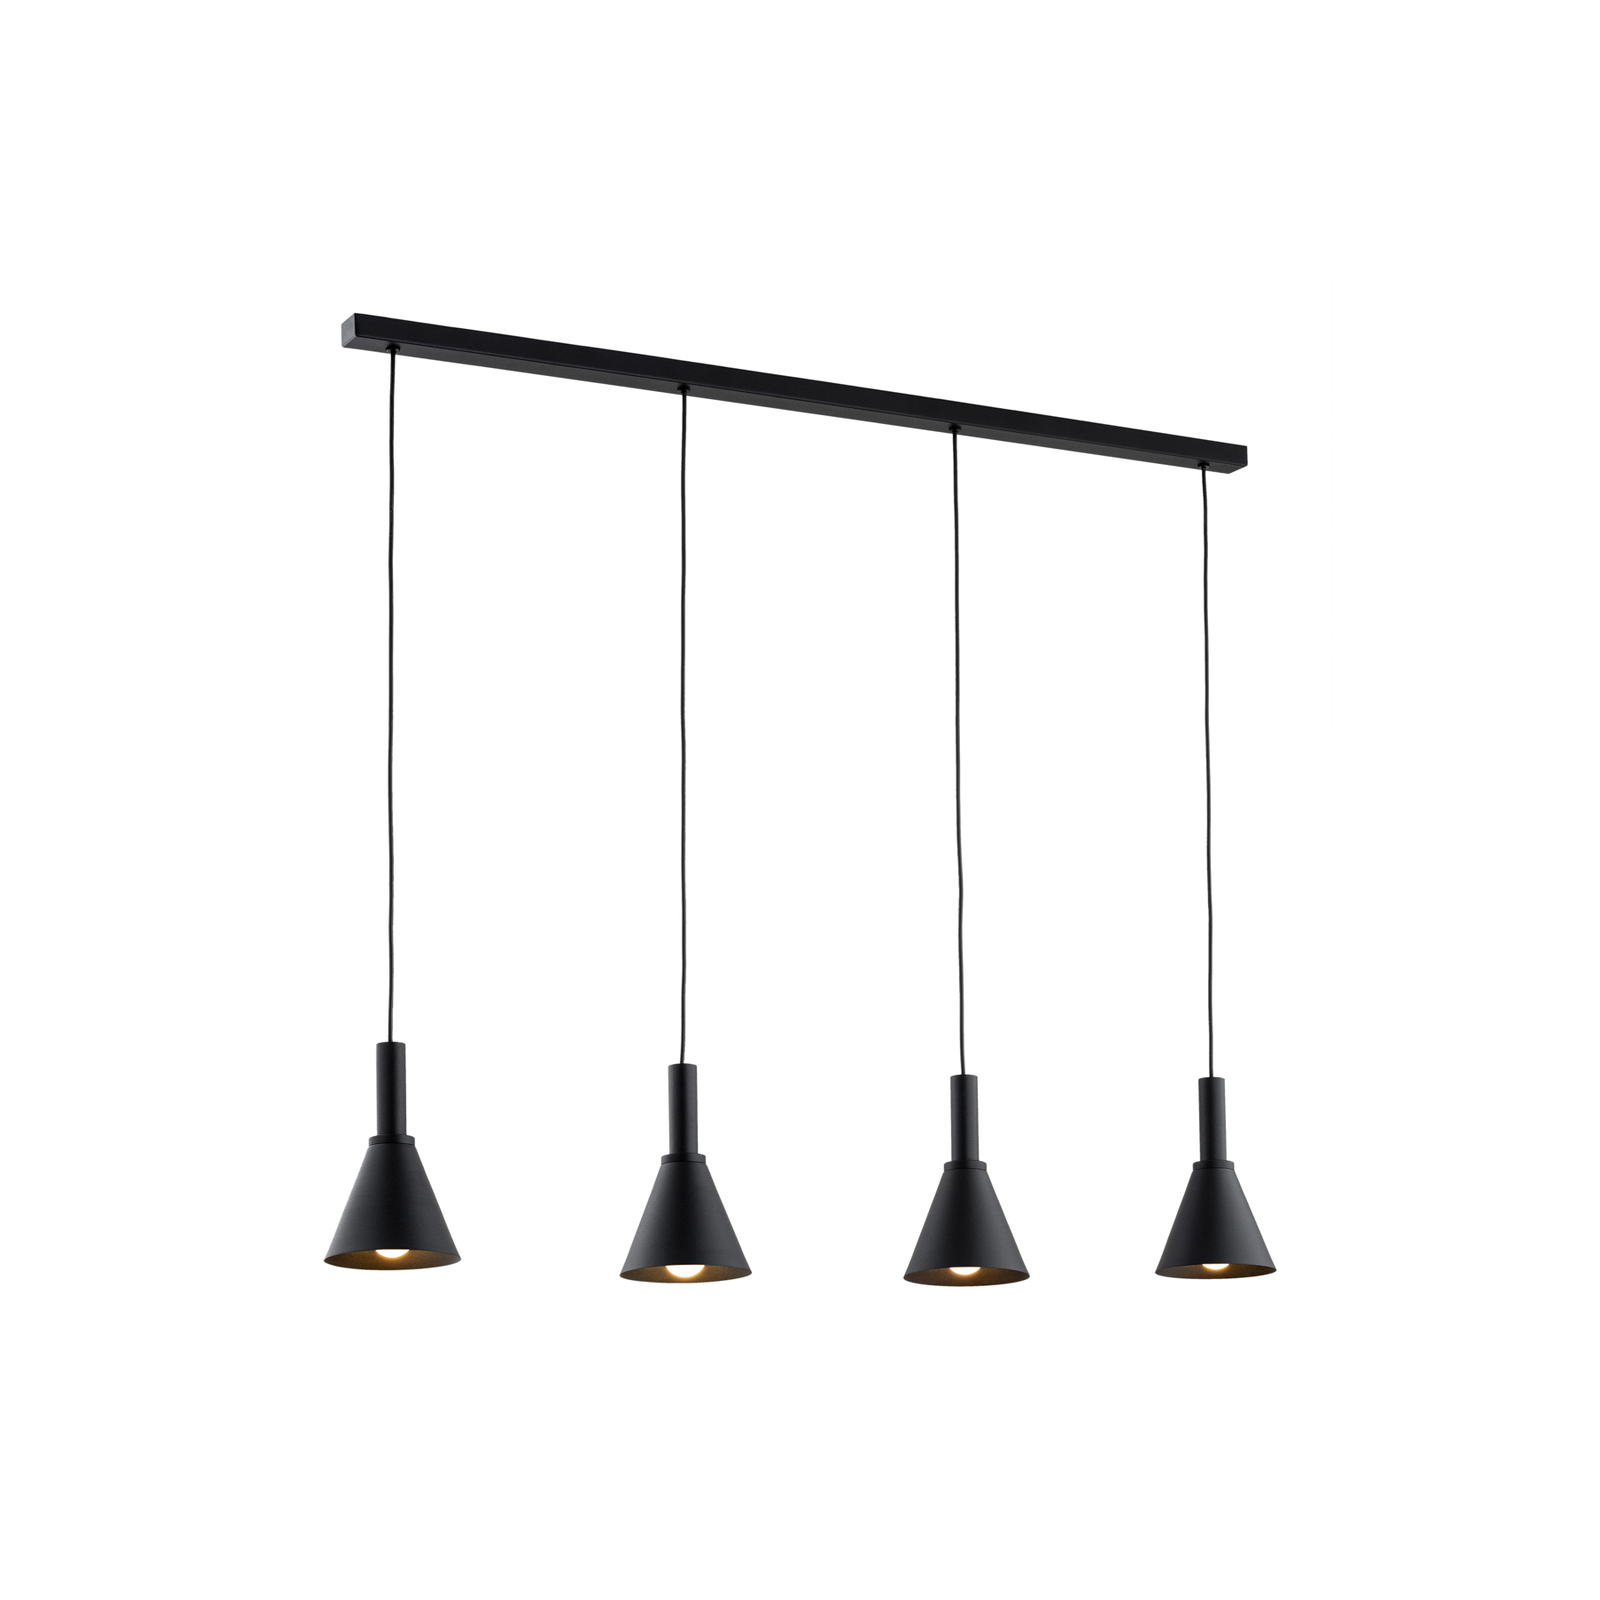 Viseća lampa Norte, crna, čelik, dužina 114 cm, 4 svjetla